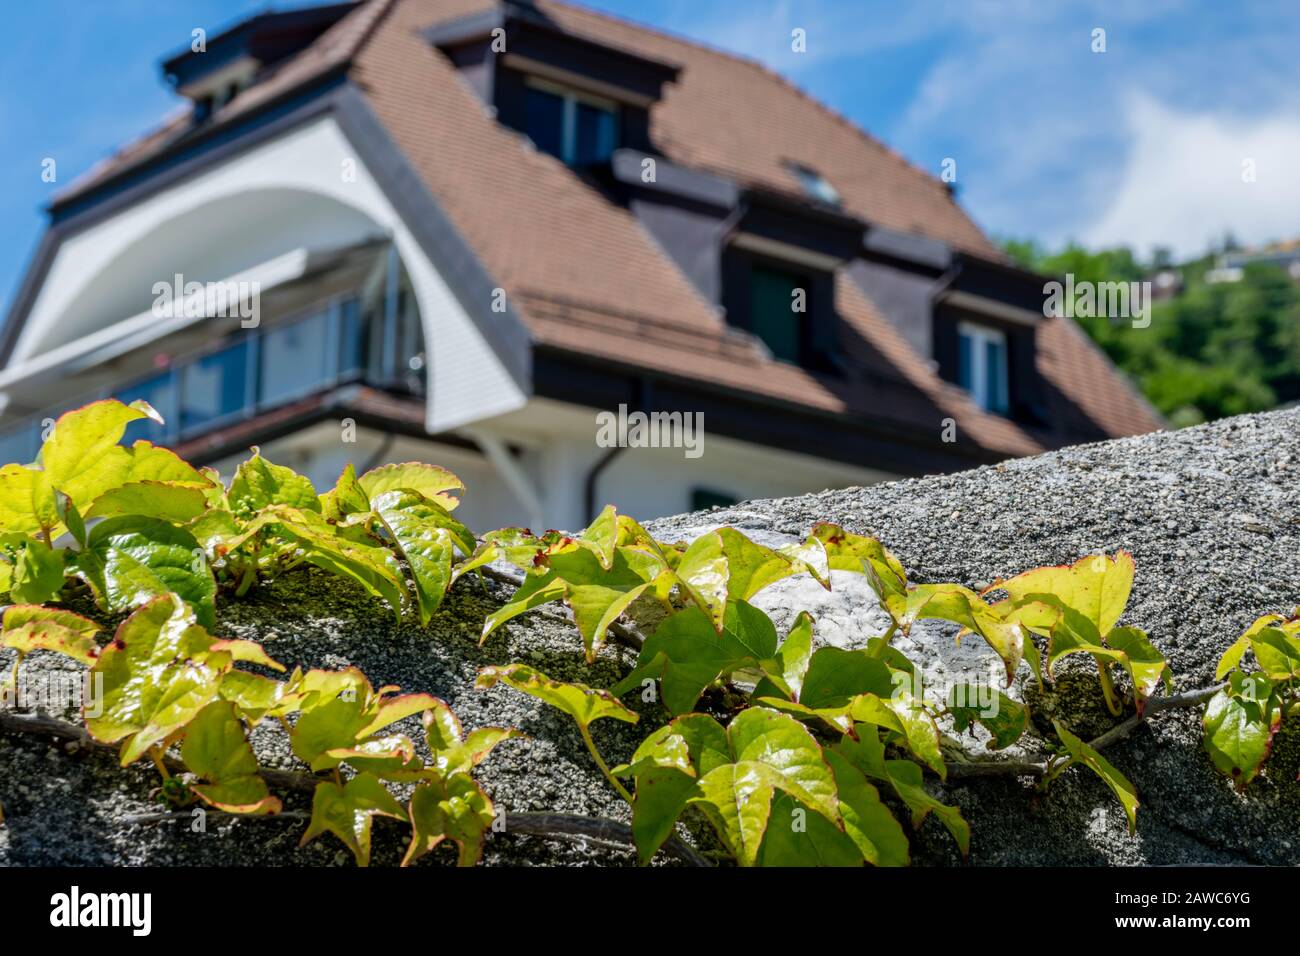 Ivy pianta su primo piano e casa in background Foto Stock